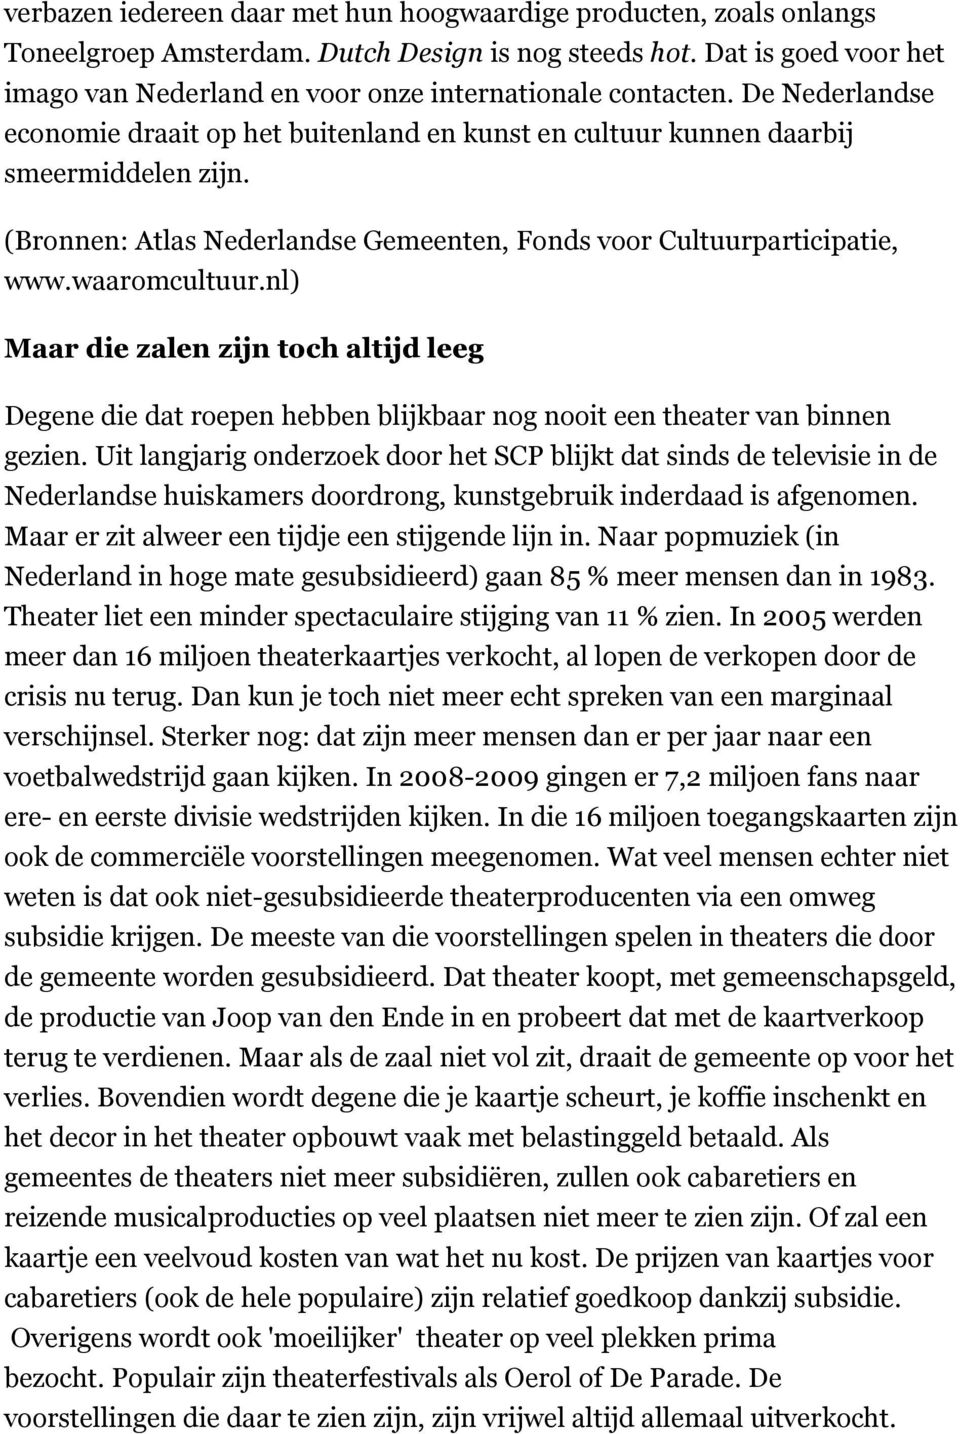 (Bronnen: Atlas Nederlandse Gemeenten, Fonds voor Cultuurparticipatie, www.waaromcultuur.